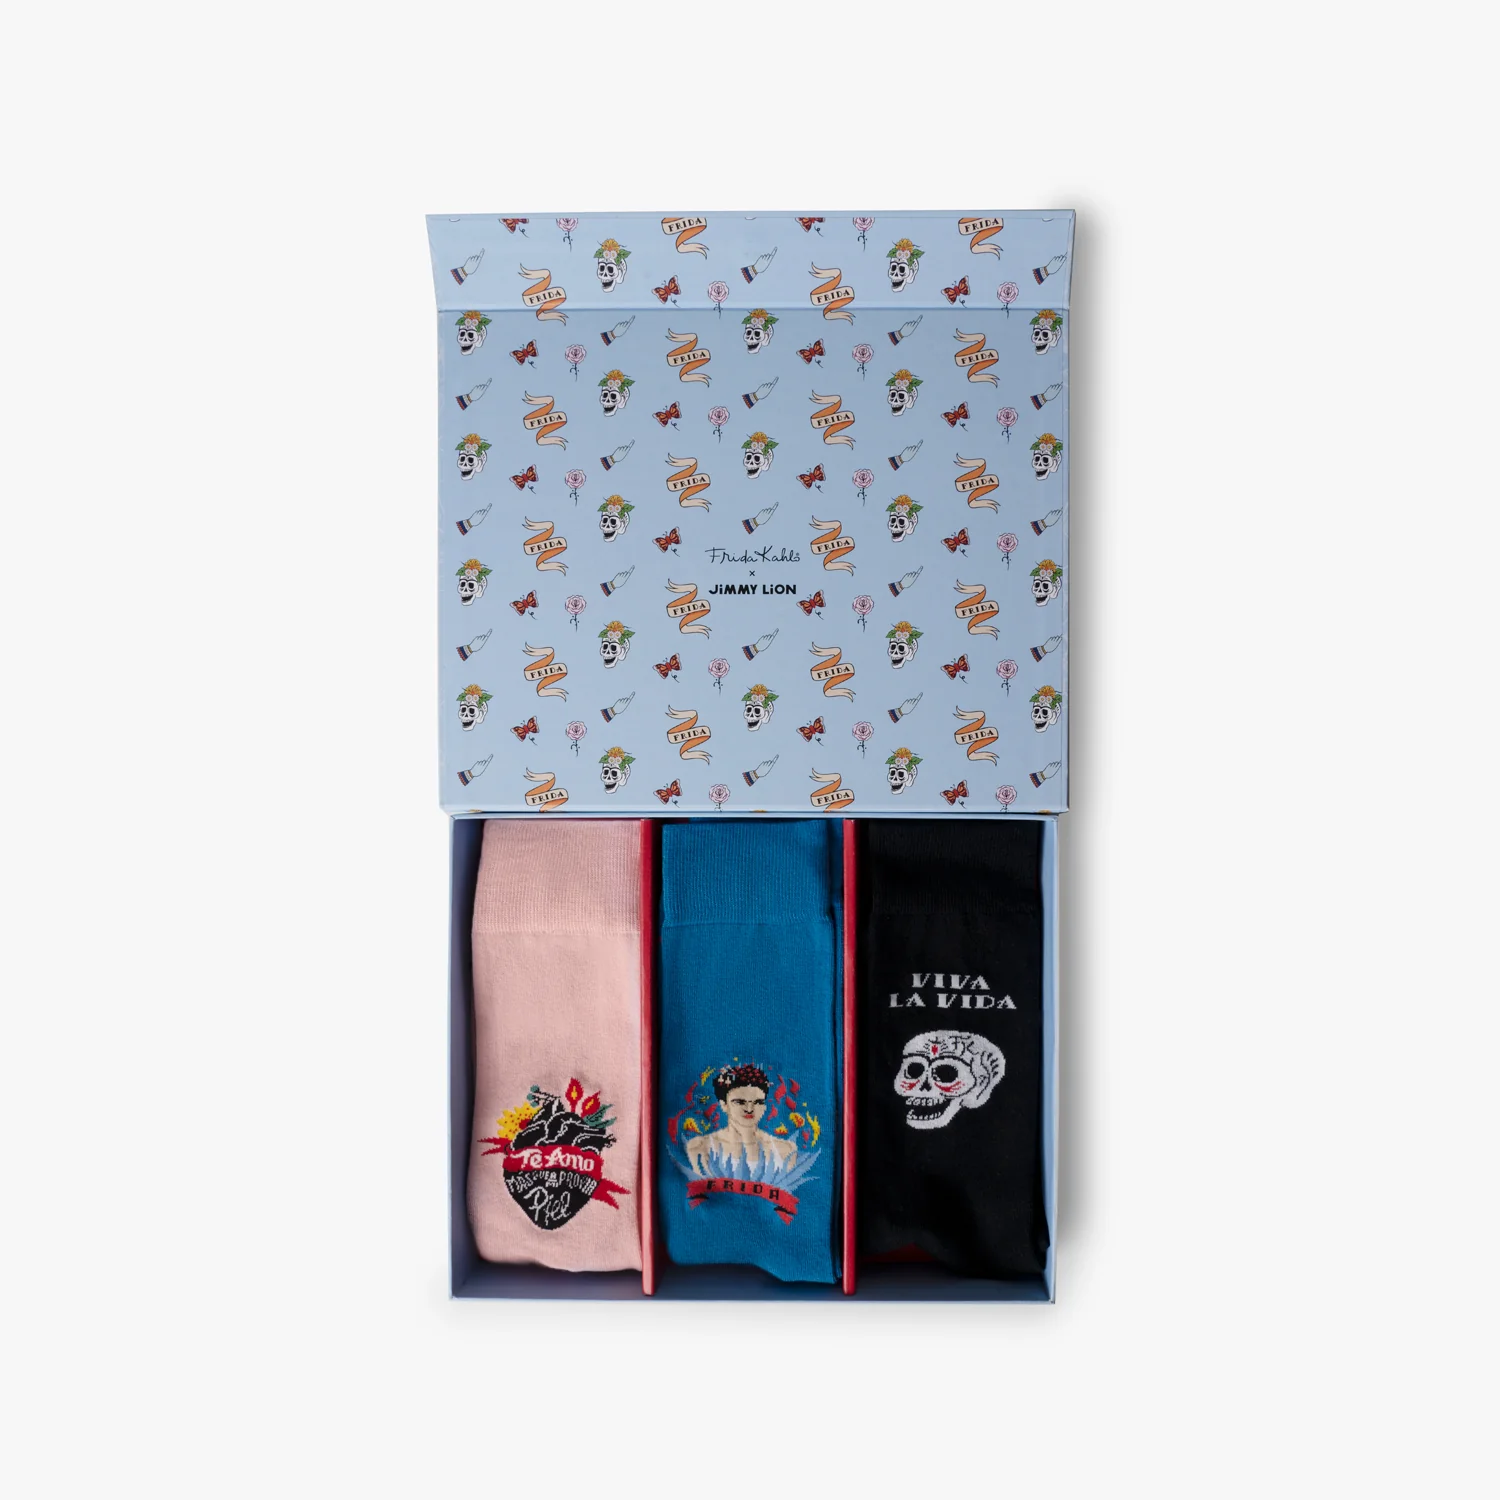 Pack de Calcetines de Jimmy Lion de la colección de Frida Khalo.